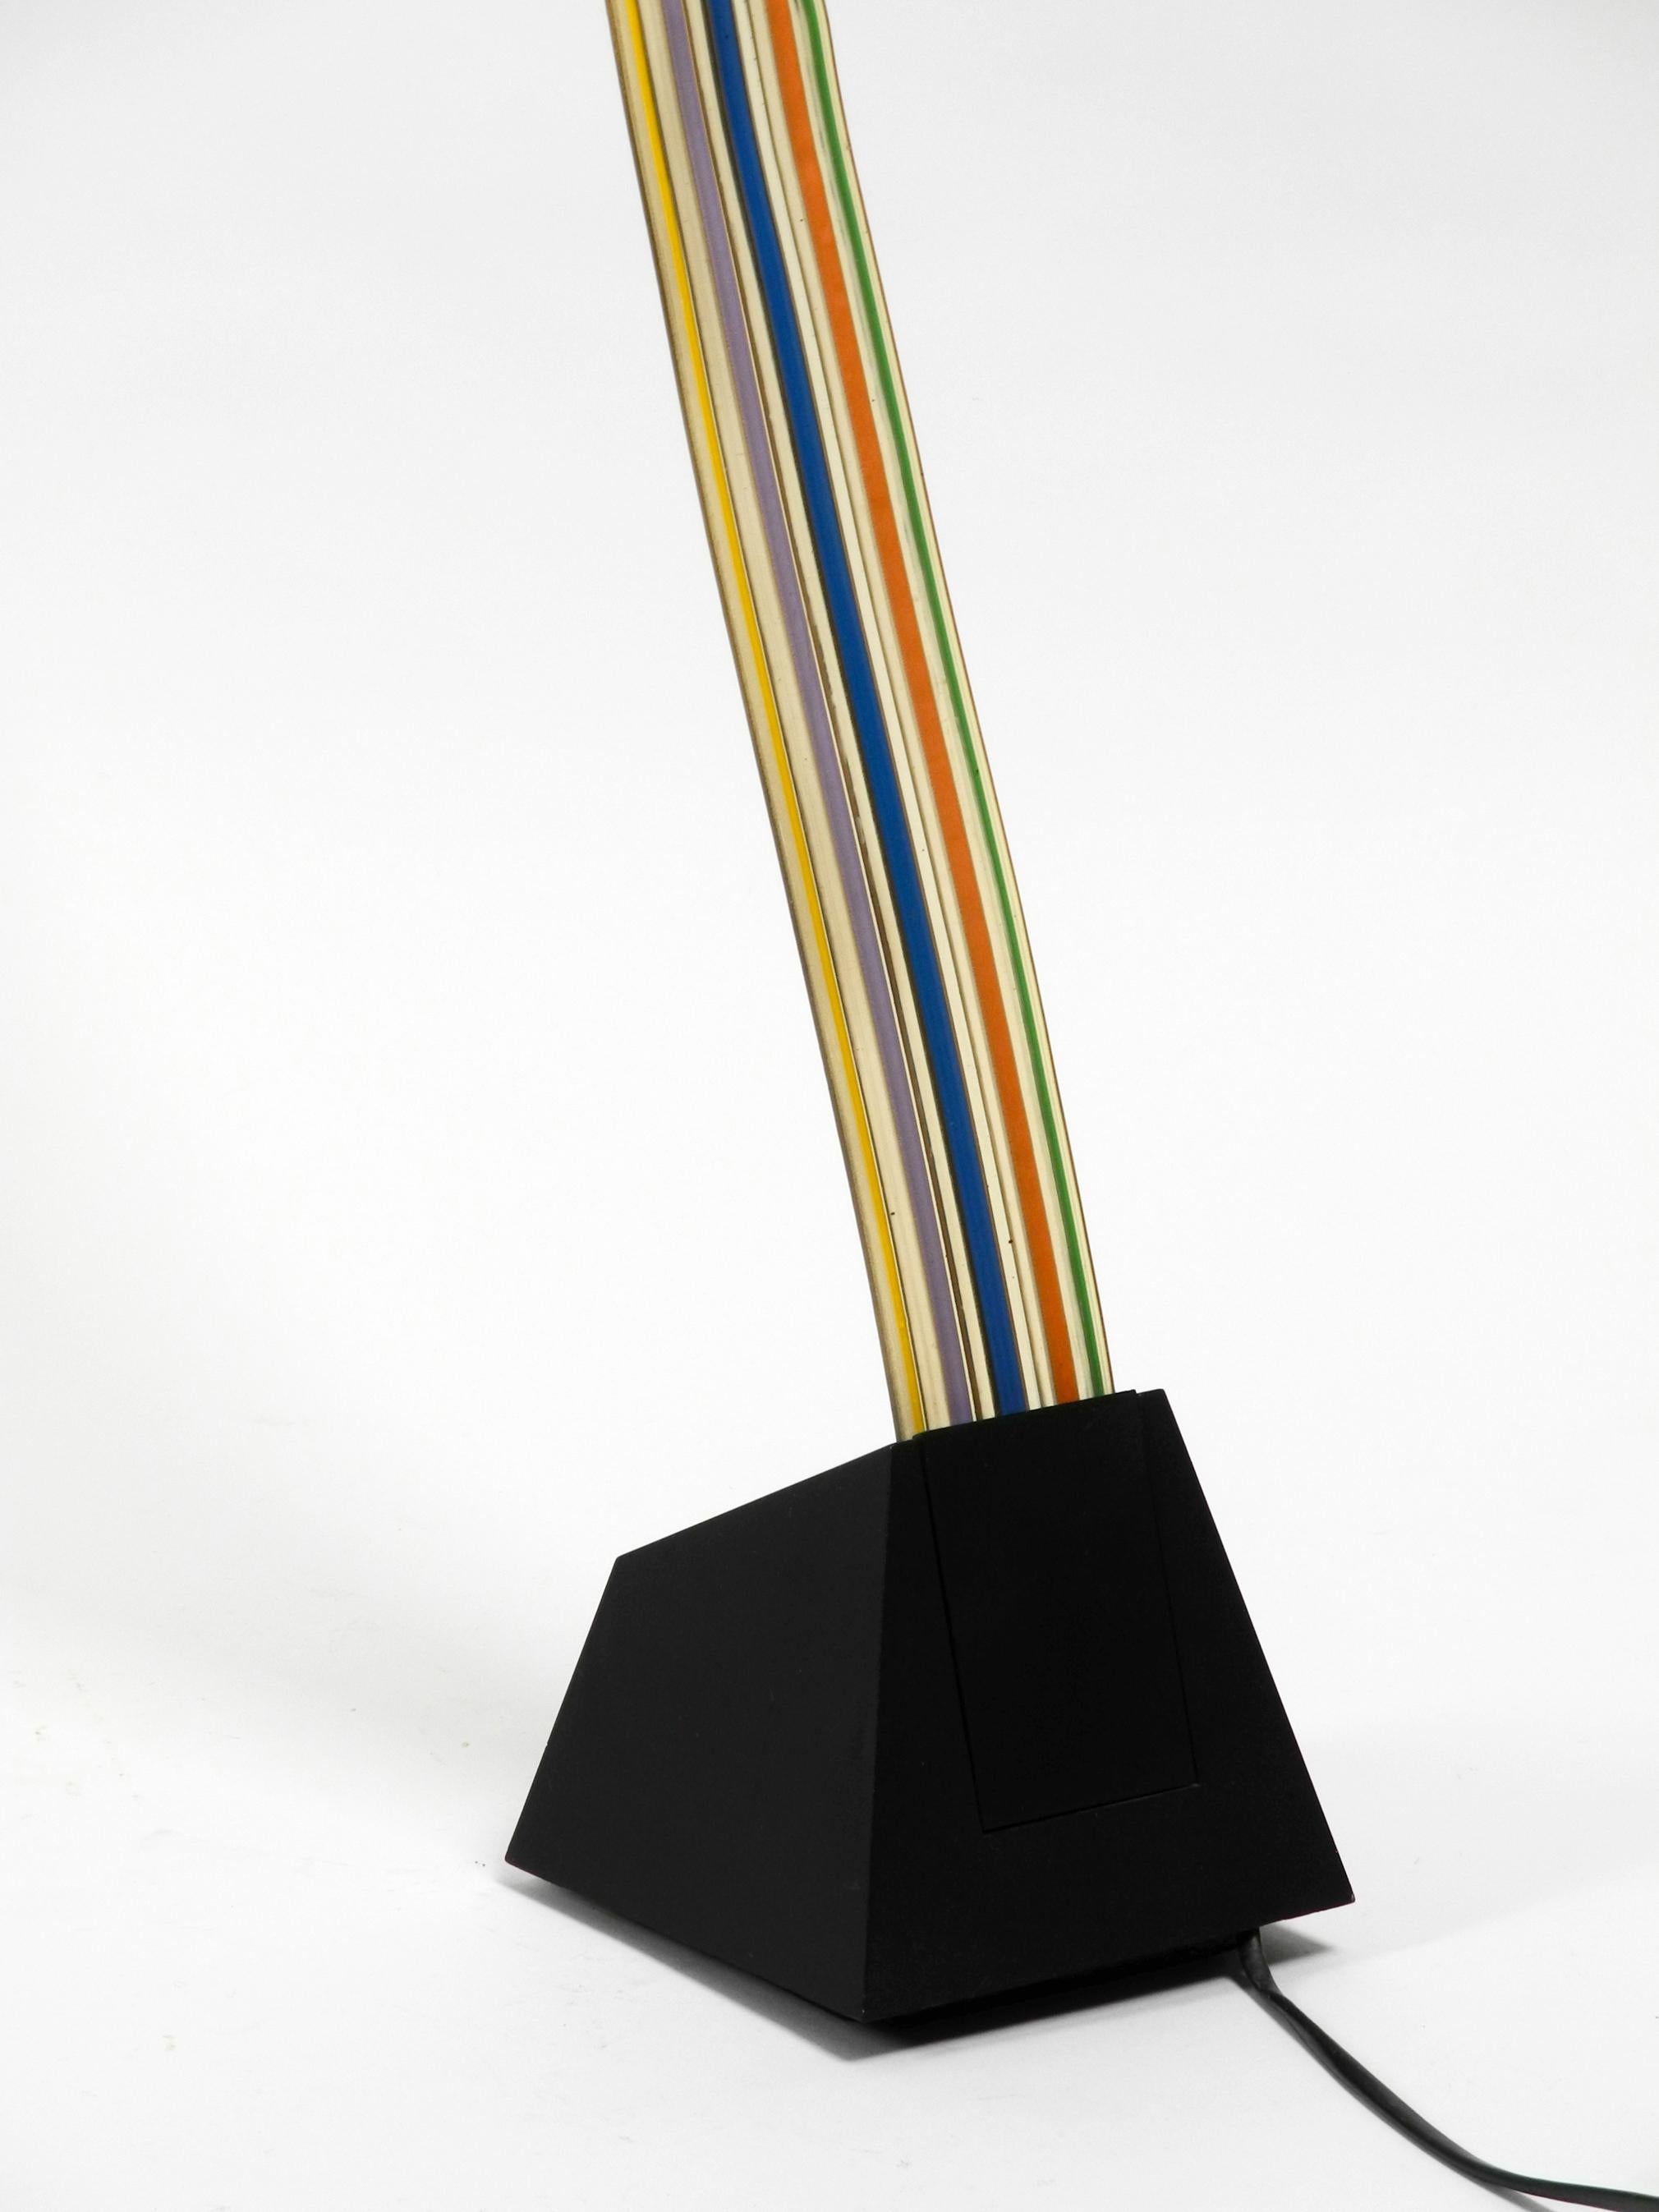 Large Halogen Table Lamp by Alberto Fraser for Stilnovo 1980s Postmodern Design For Sale 11